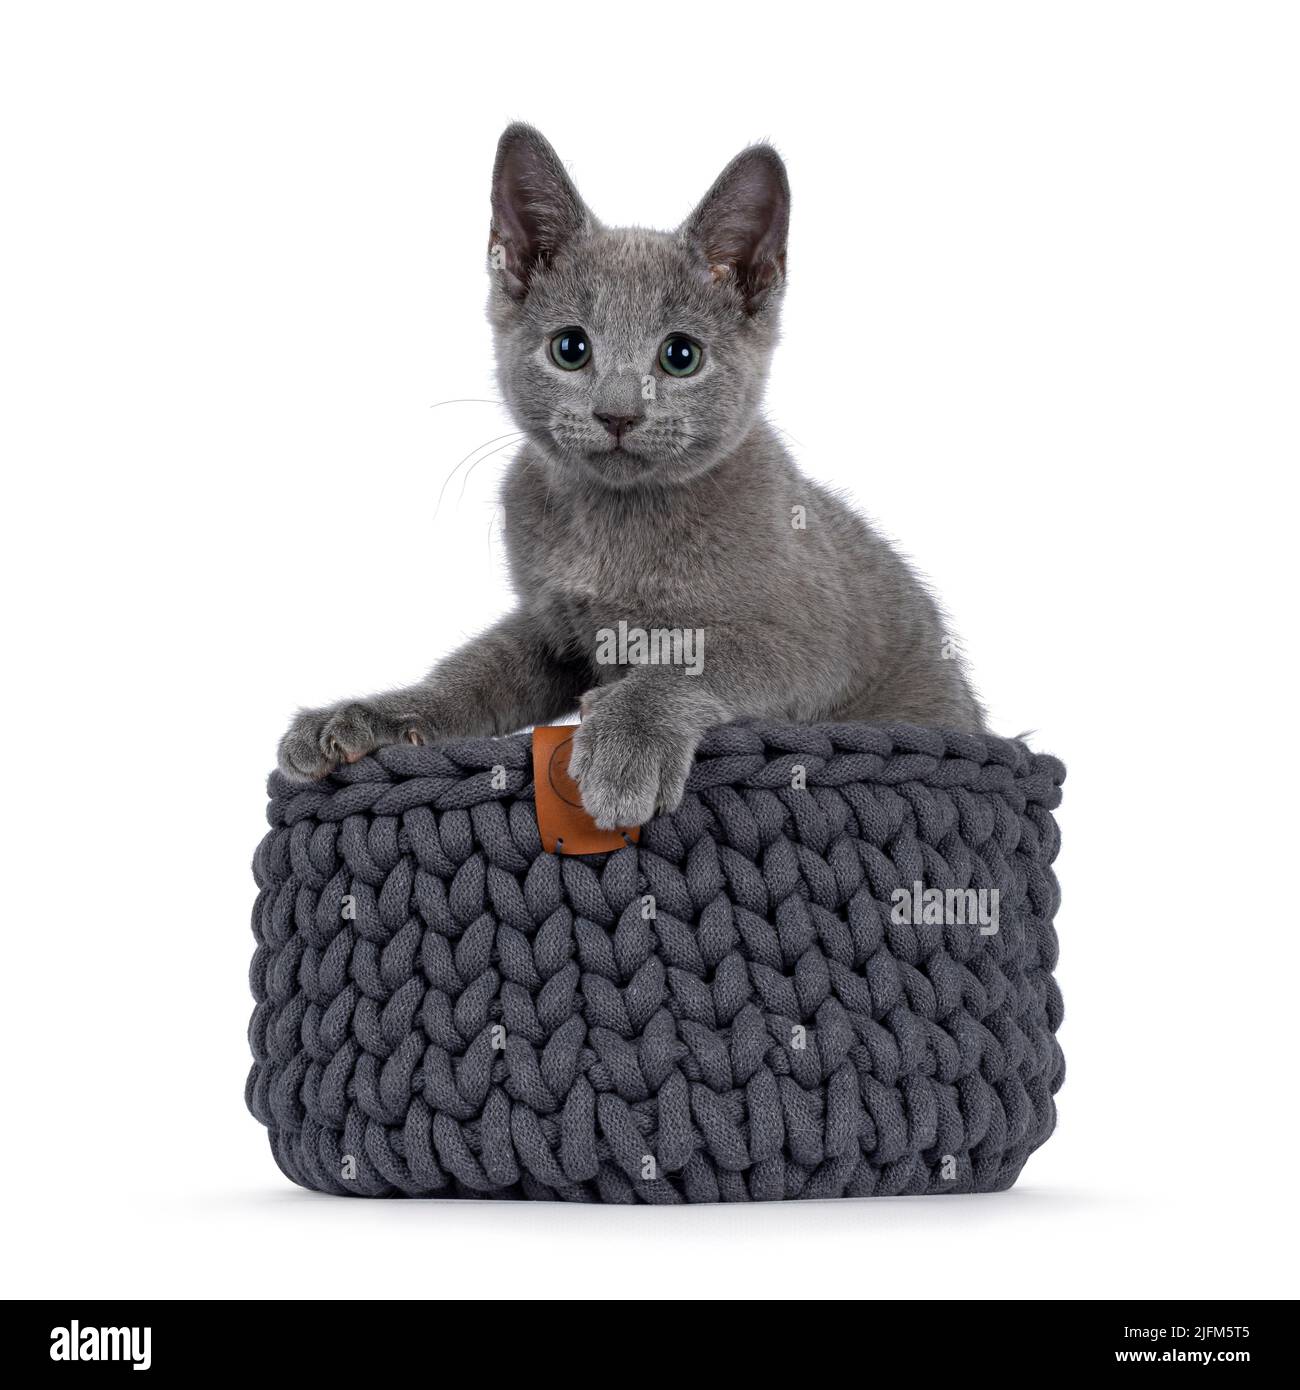 Adorable chaton de chat bleu russe, assis dans un panier tricoté gris. Regarder l'appareil photo avec des yeux verts fantastiques. Isolé sur un fond blanc. Banque D'Images